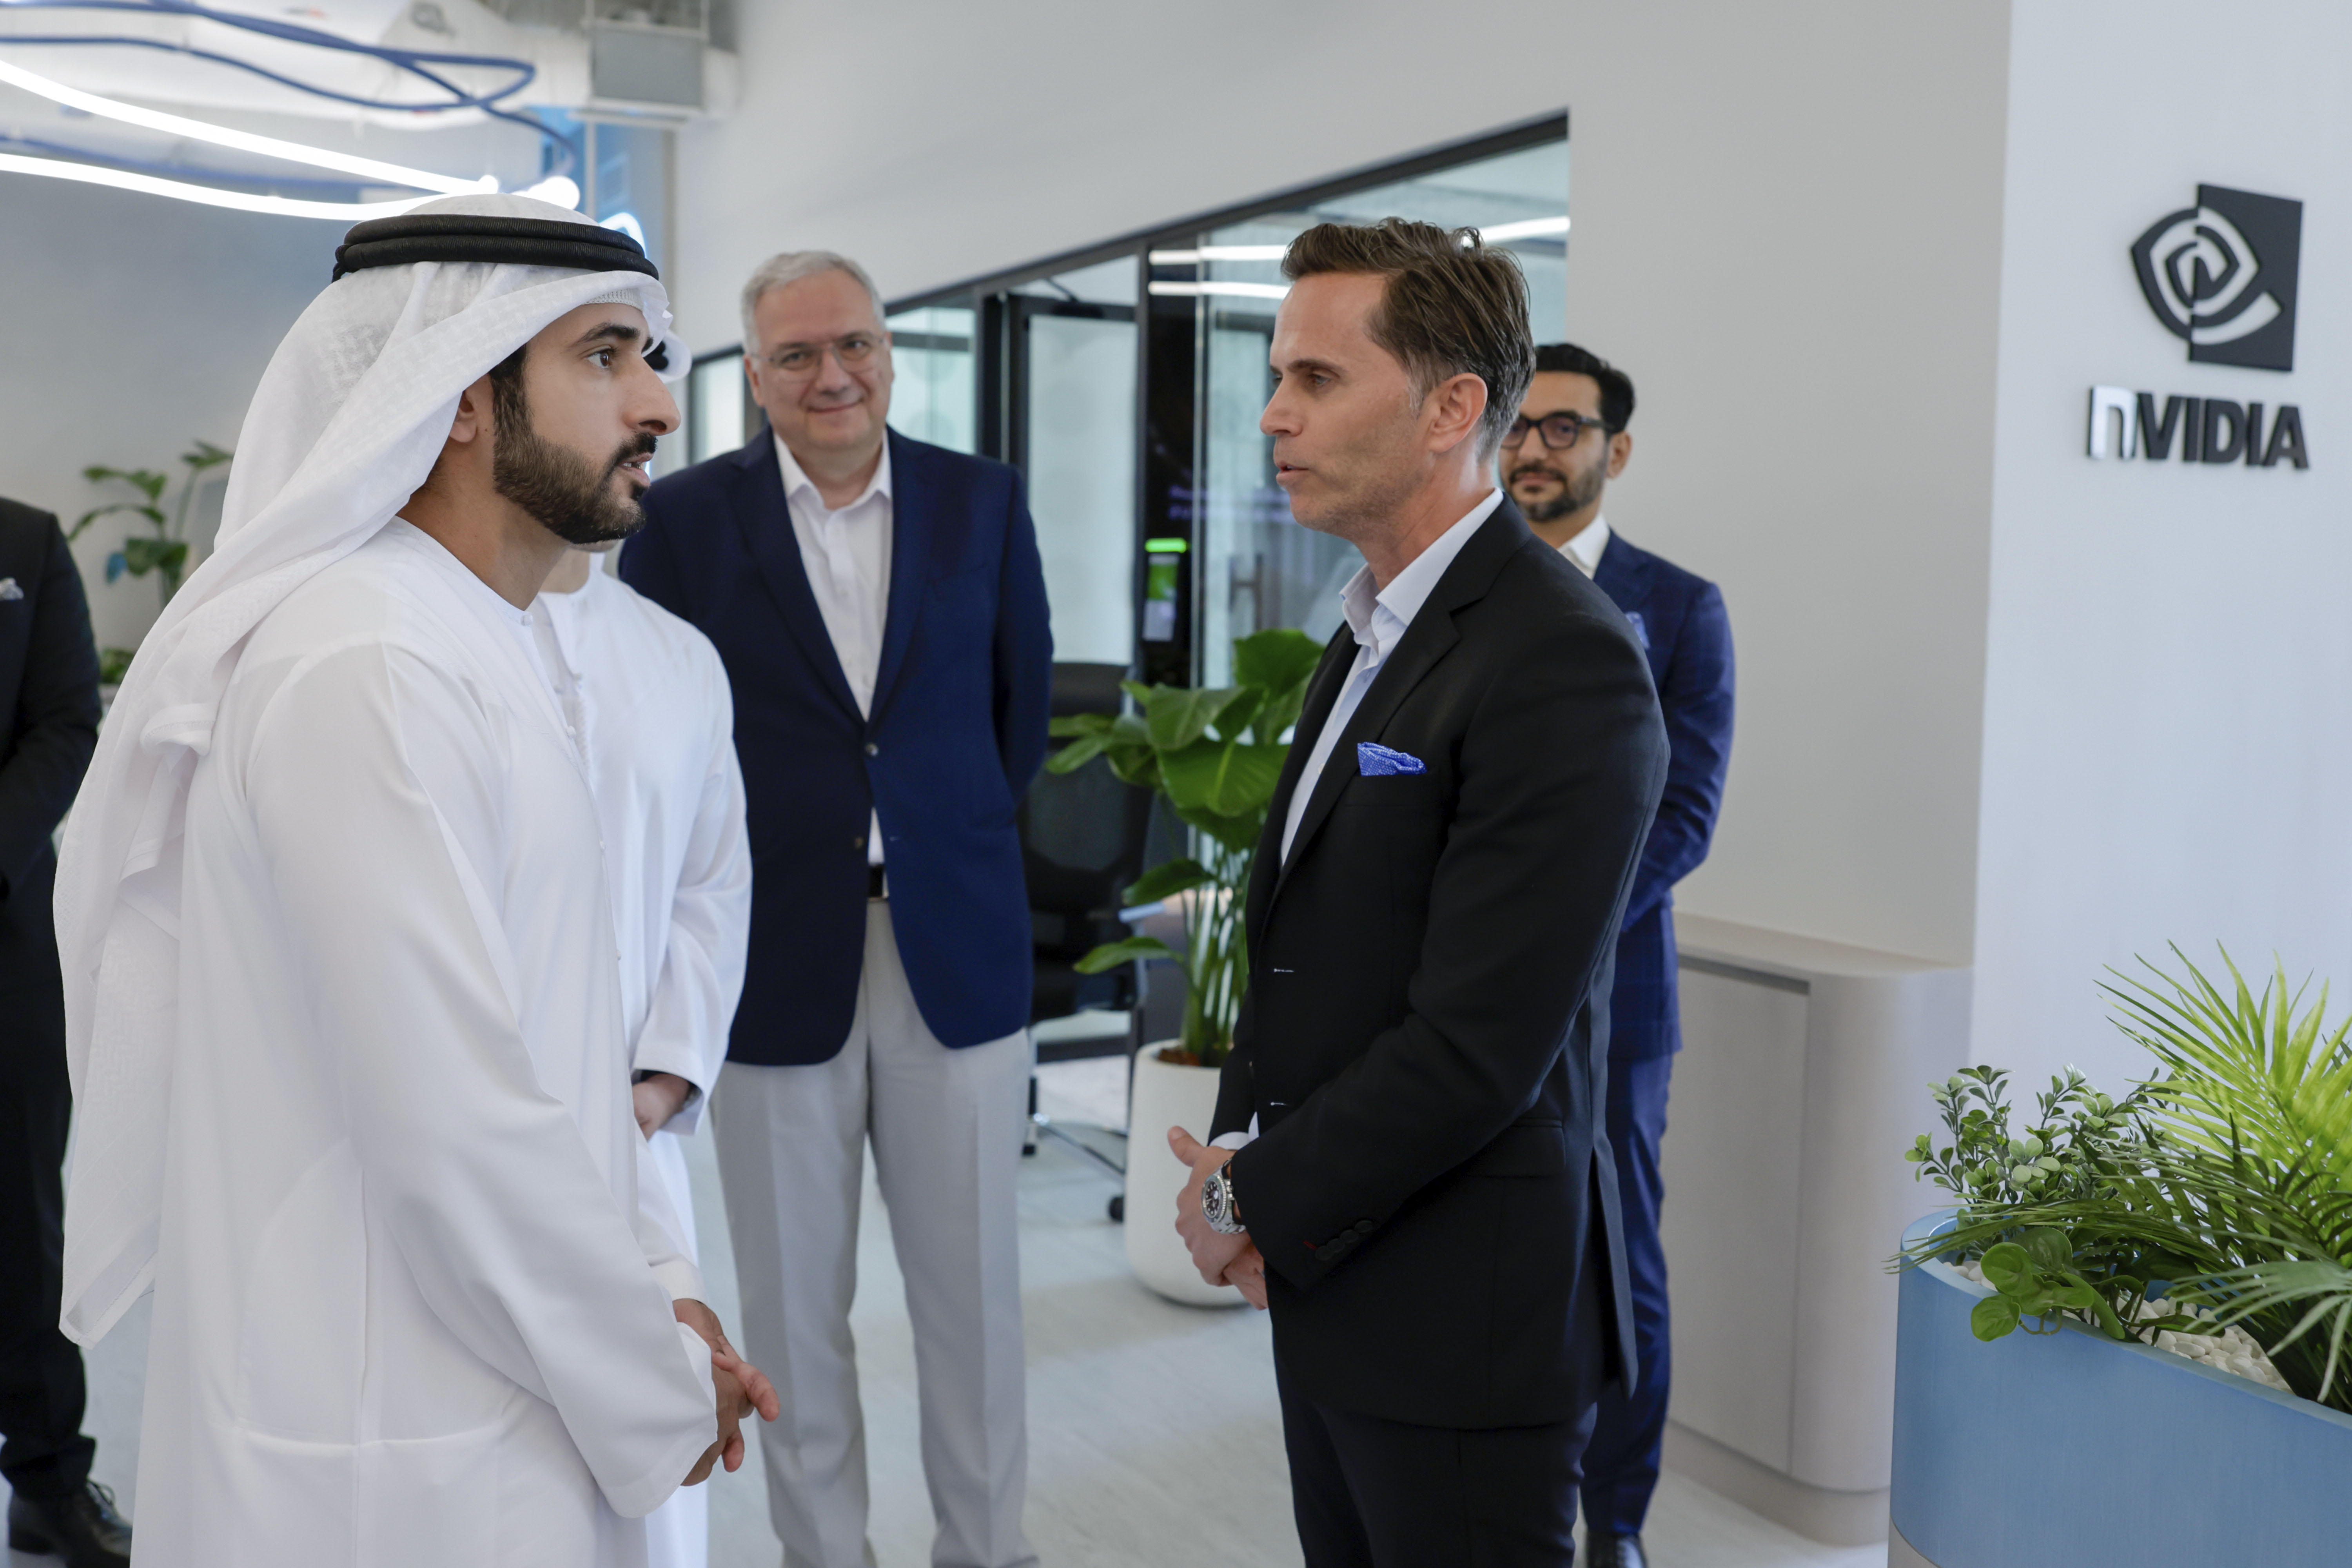 حمدان بن محمد يفتتح مجمع كامبس دبي للذكاء الاصطناعي  في مركز دبي المالي العالمي